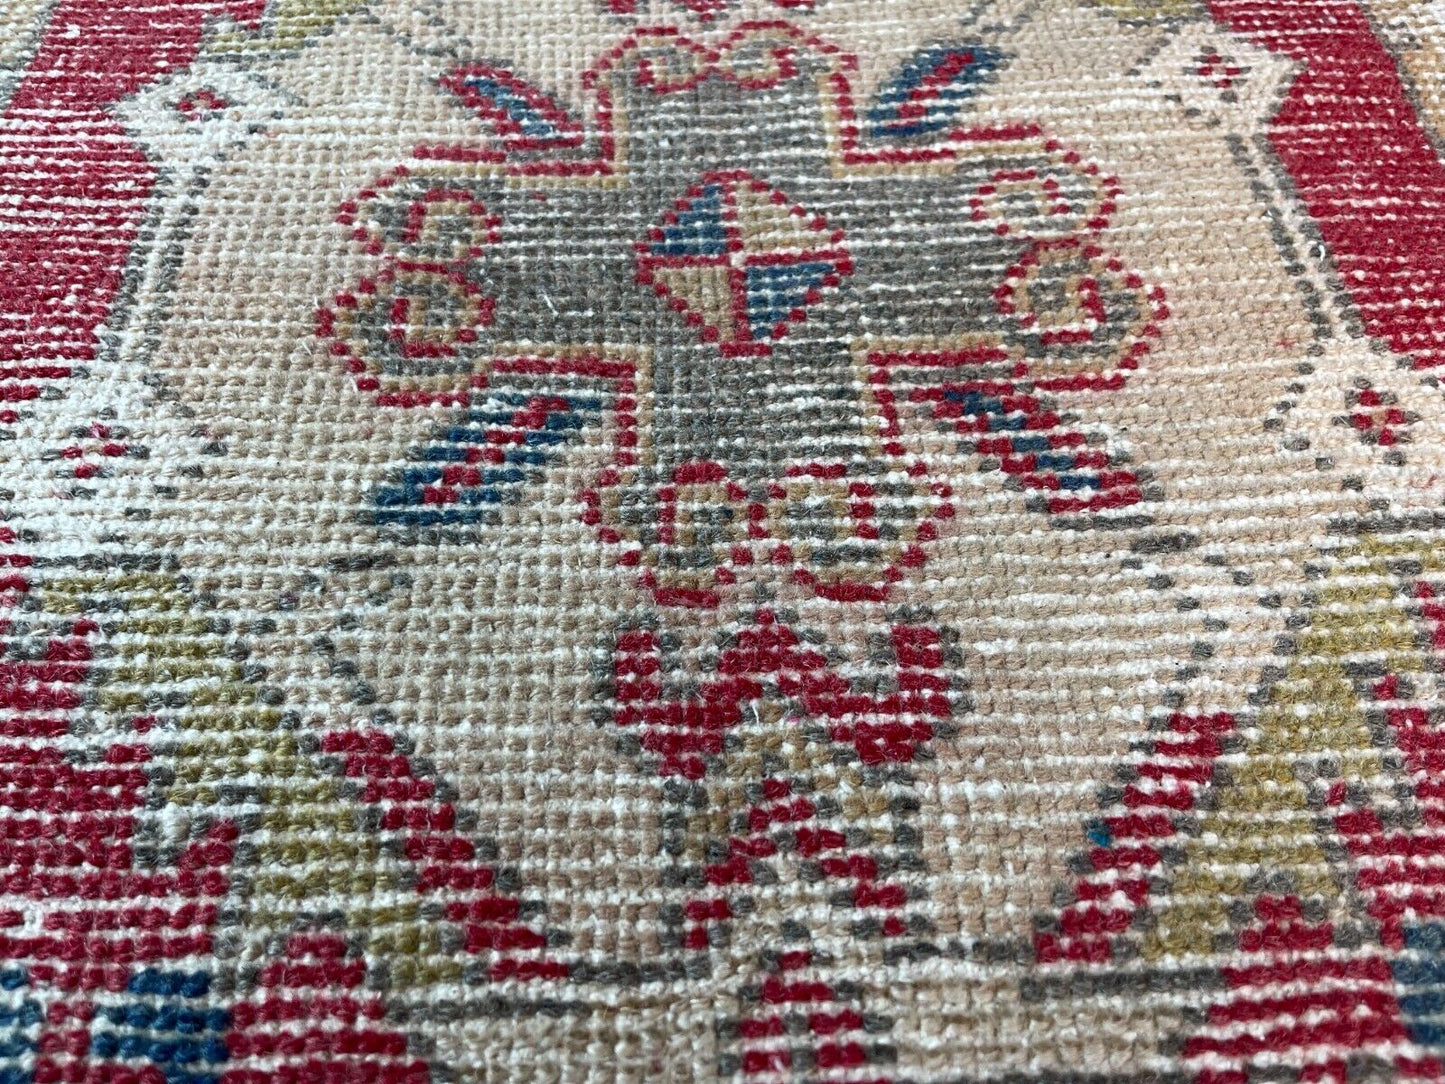 Traditionelle Vintage türkische Teppich, Vintage Turkish Rug 93 X52 cm